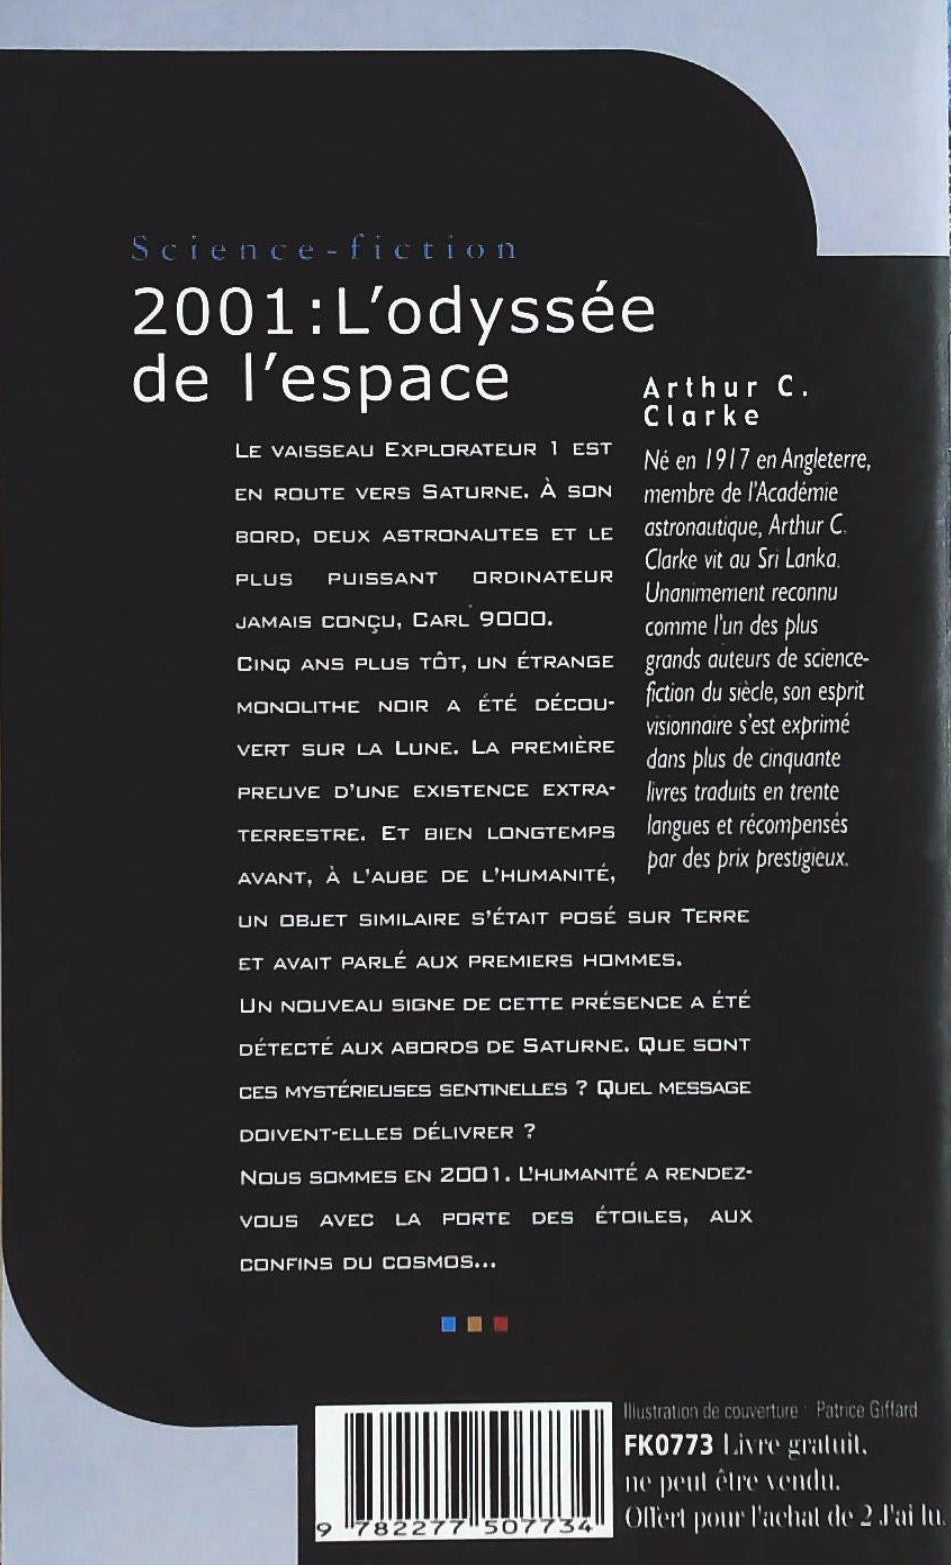 2001 L'odyssée de l'espace (Arthur C. Clarke)